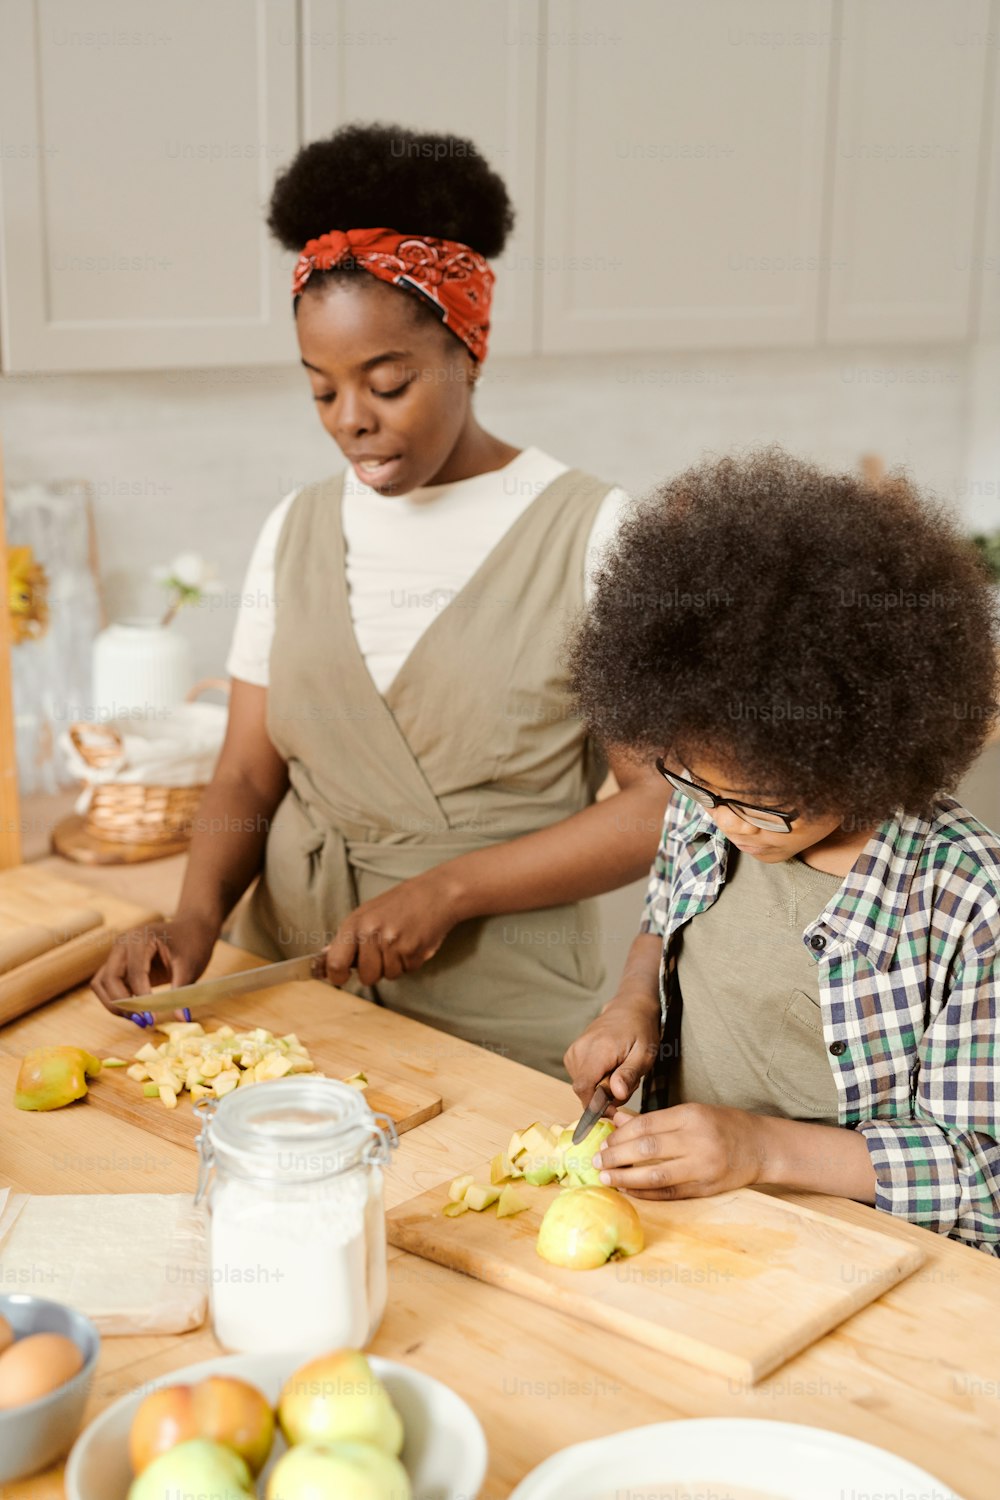 어린 소년과 그의 어머니는 아침 식사로 집에서 만든 과자를 위해 사과를 썰고 있다